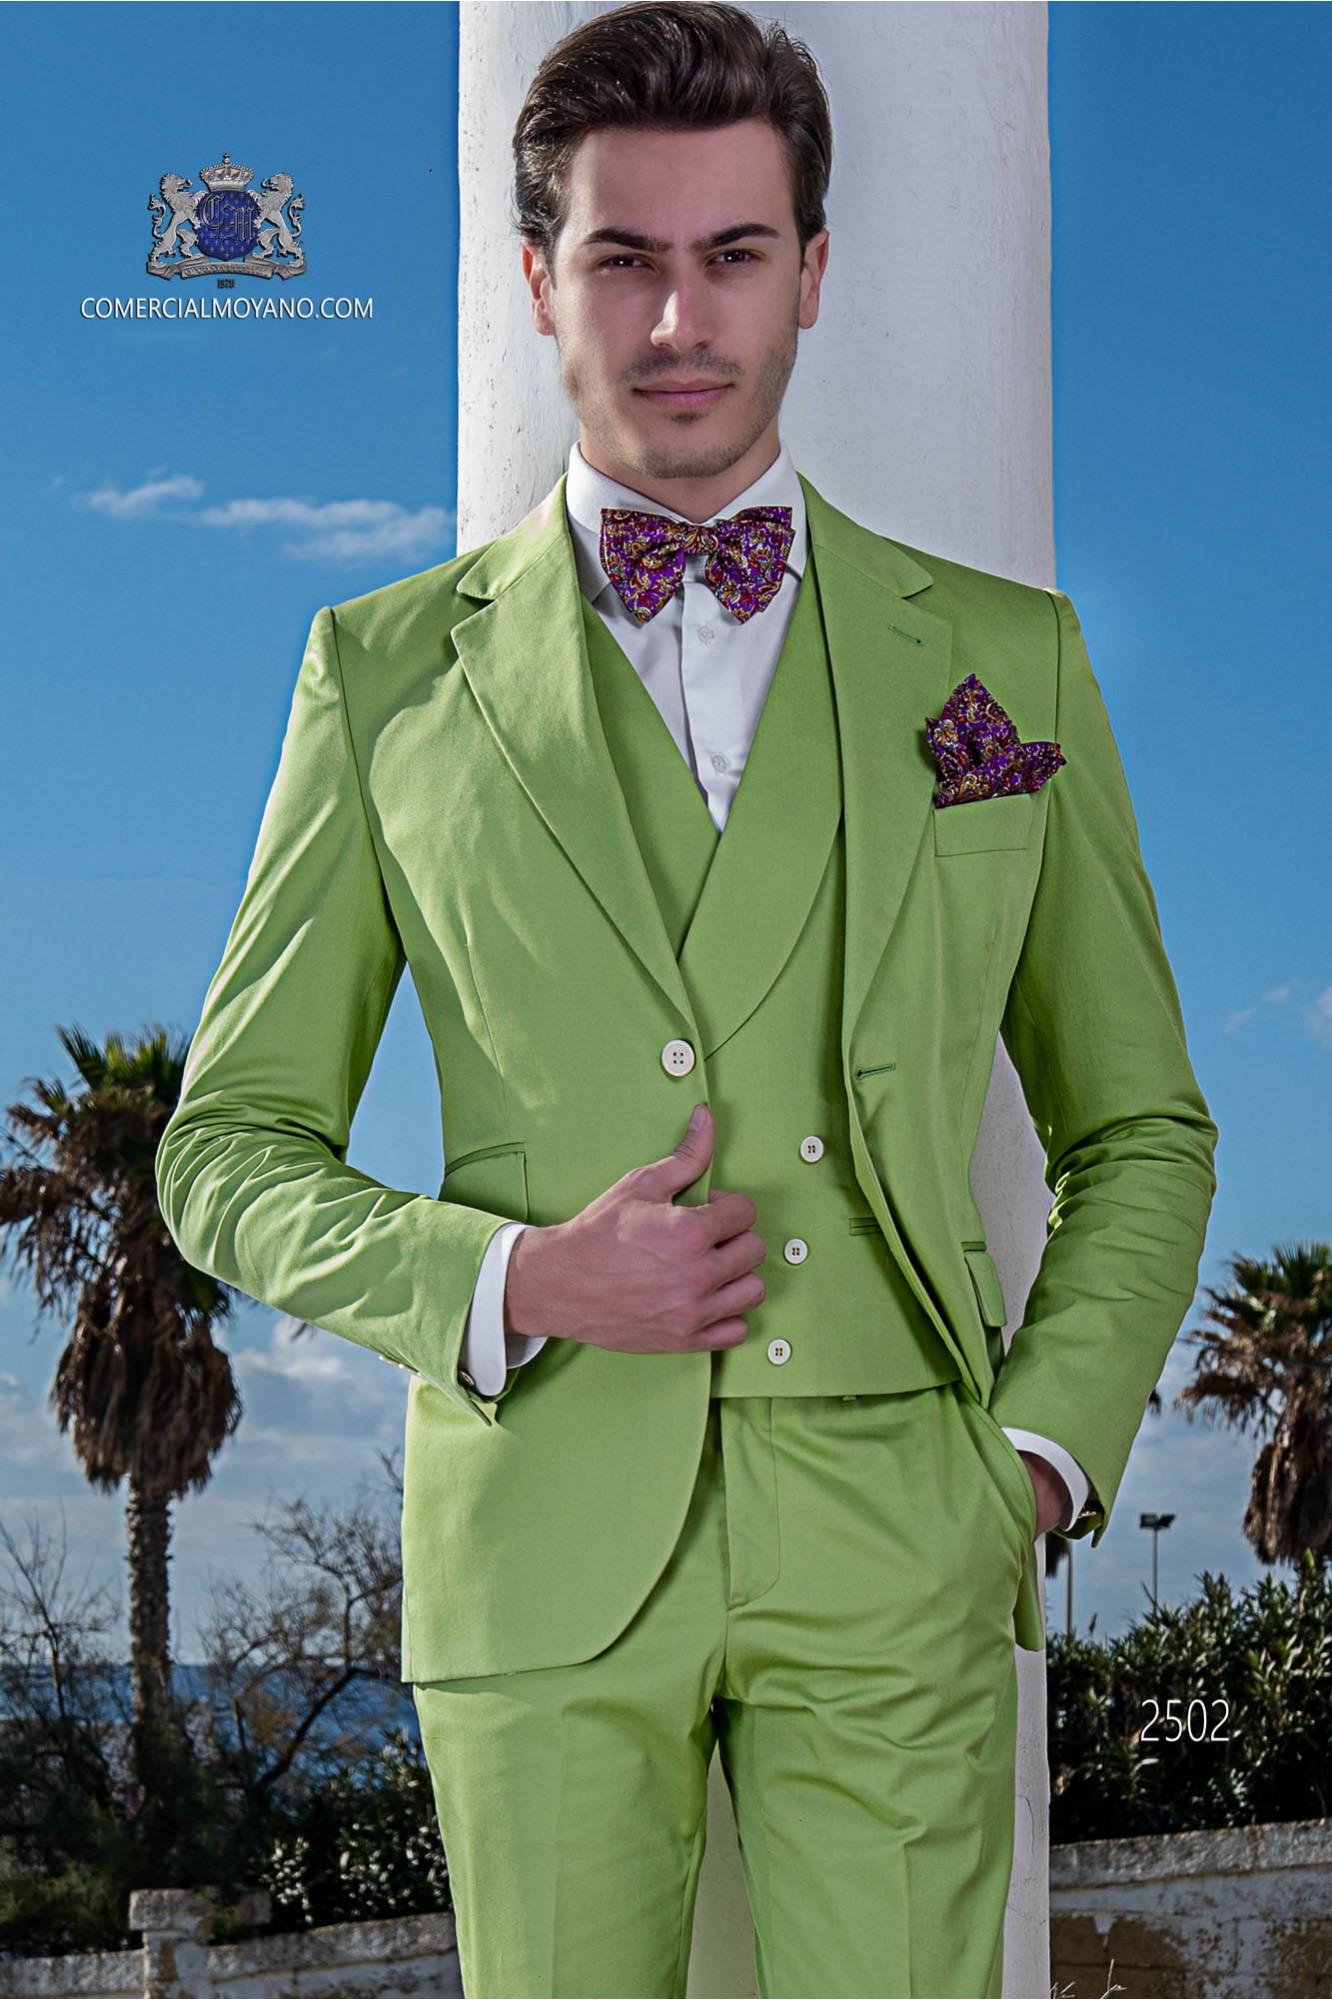 Traje moderno italiano de estilo “Slim”. Tejido color verde 100% algodón modelo: 2502 Mario Moyano colección Hipster